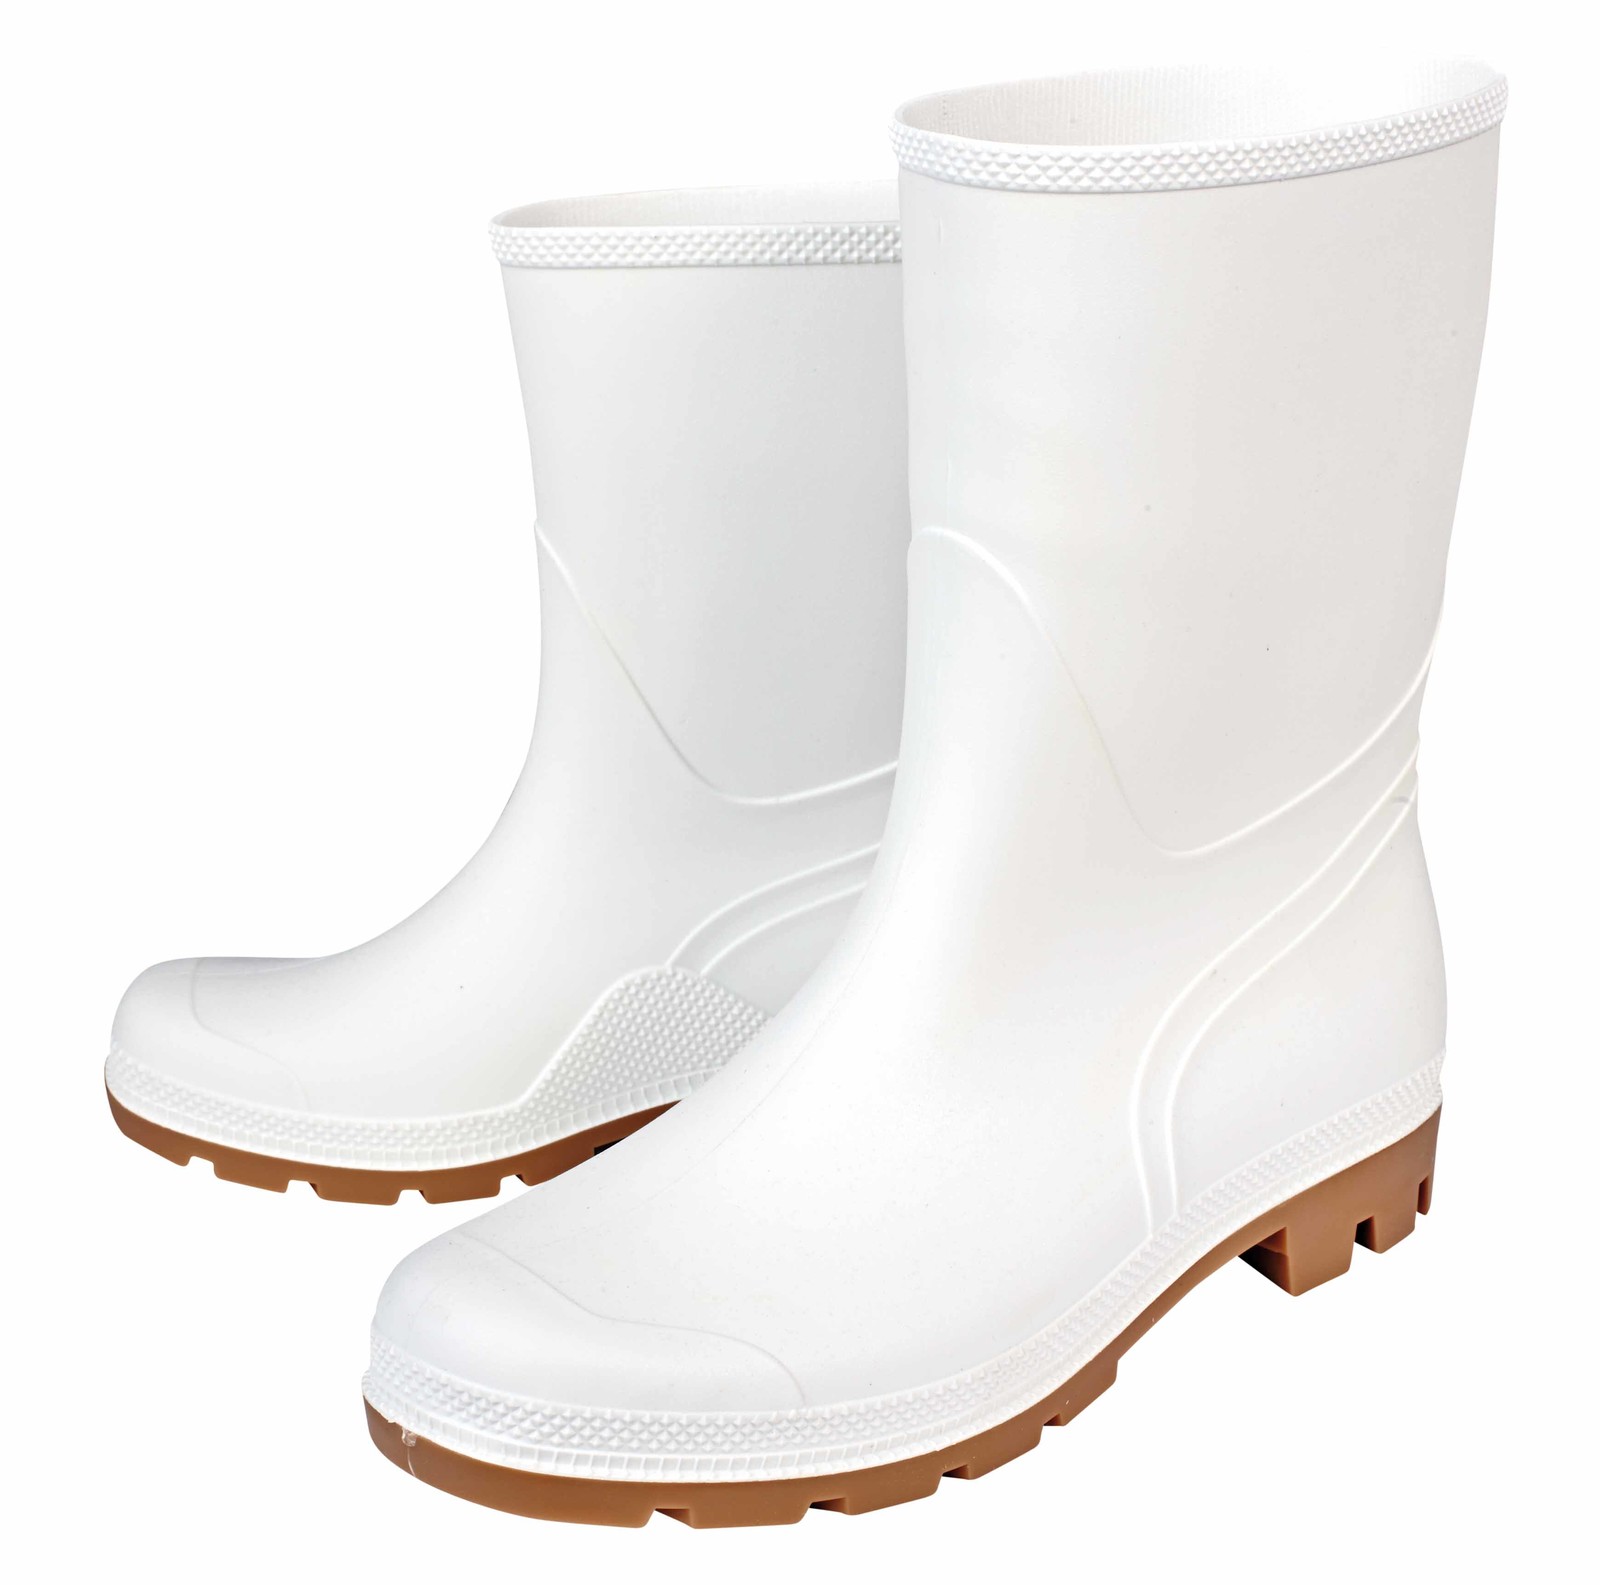 Gumáky Boots Troncheto PVC nízke - veľkosť: 37, farba: biela